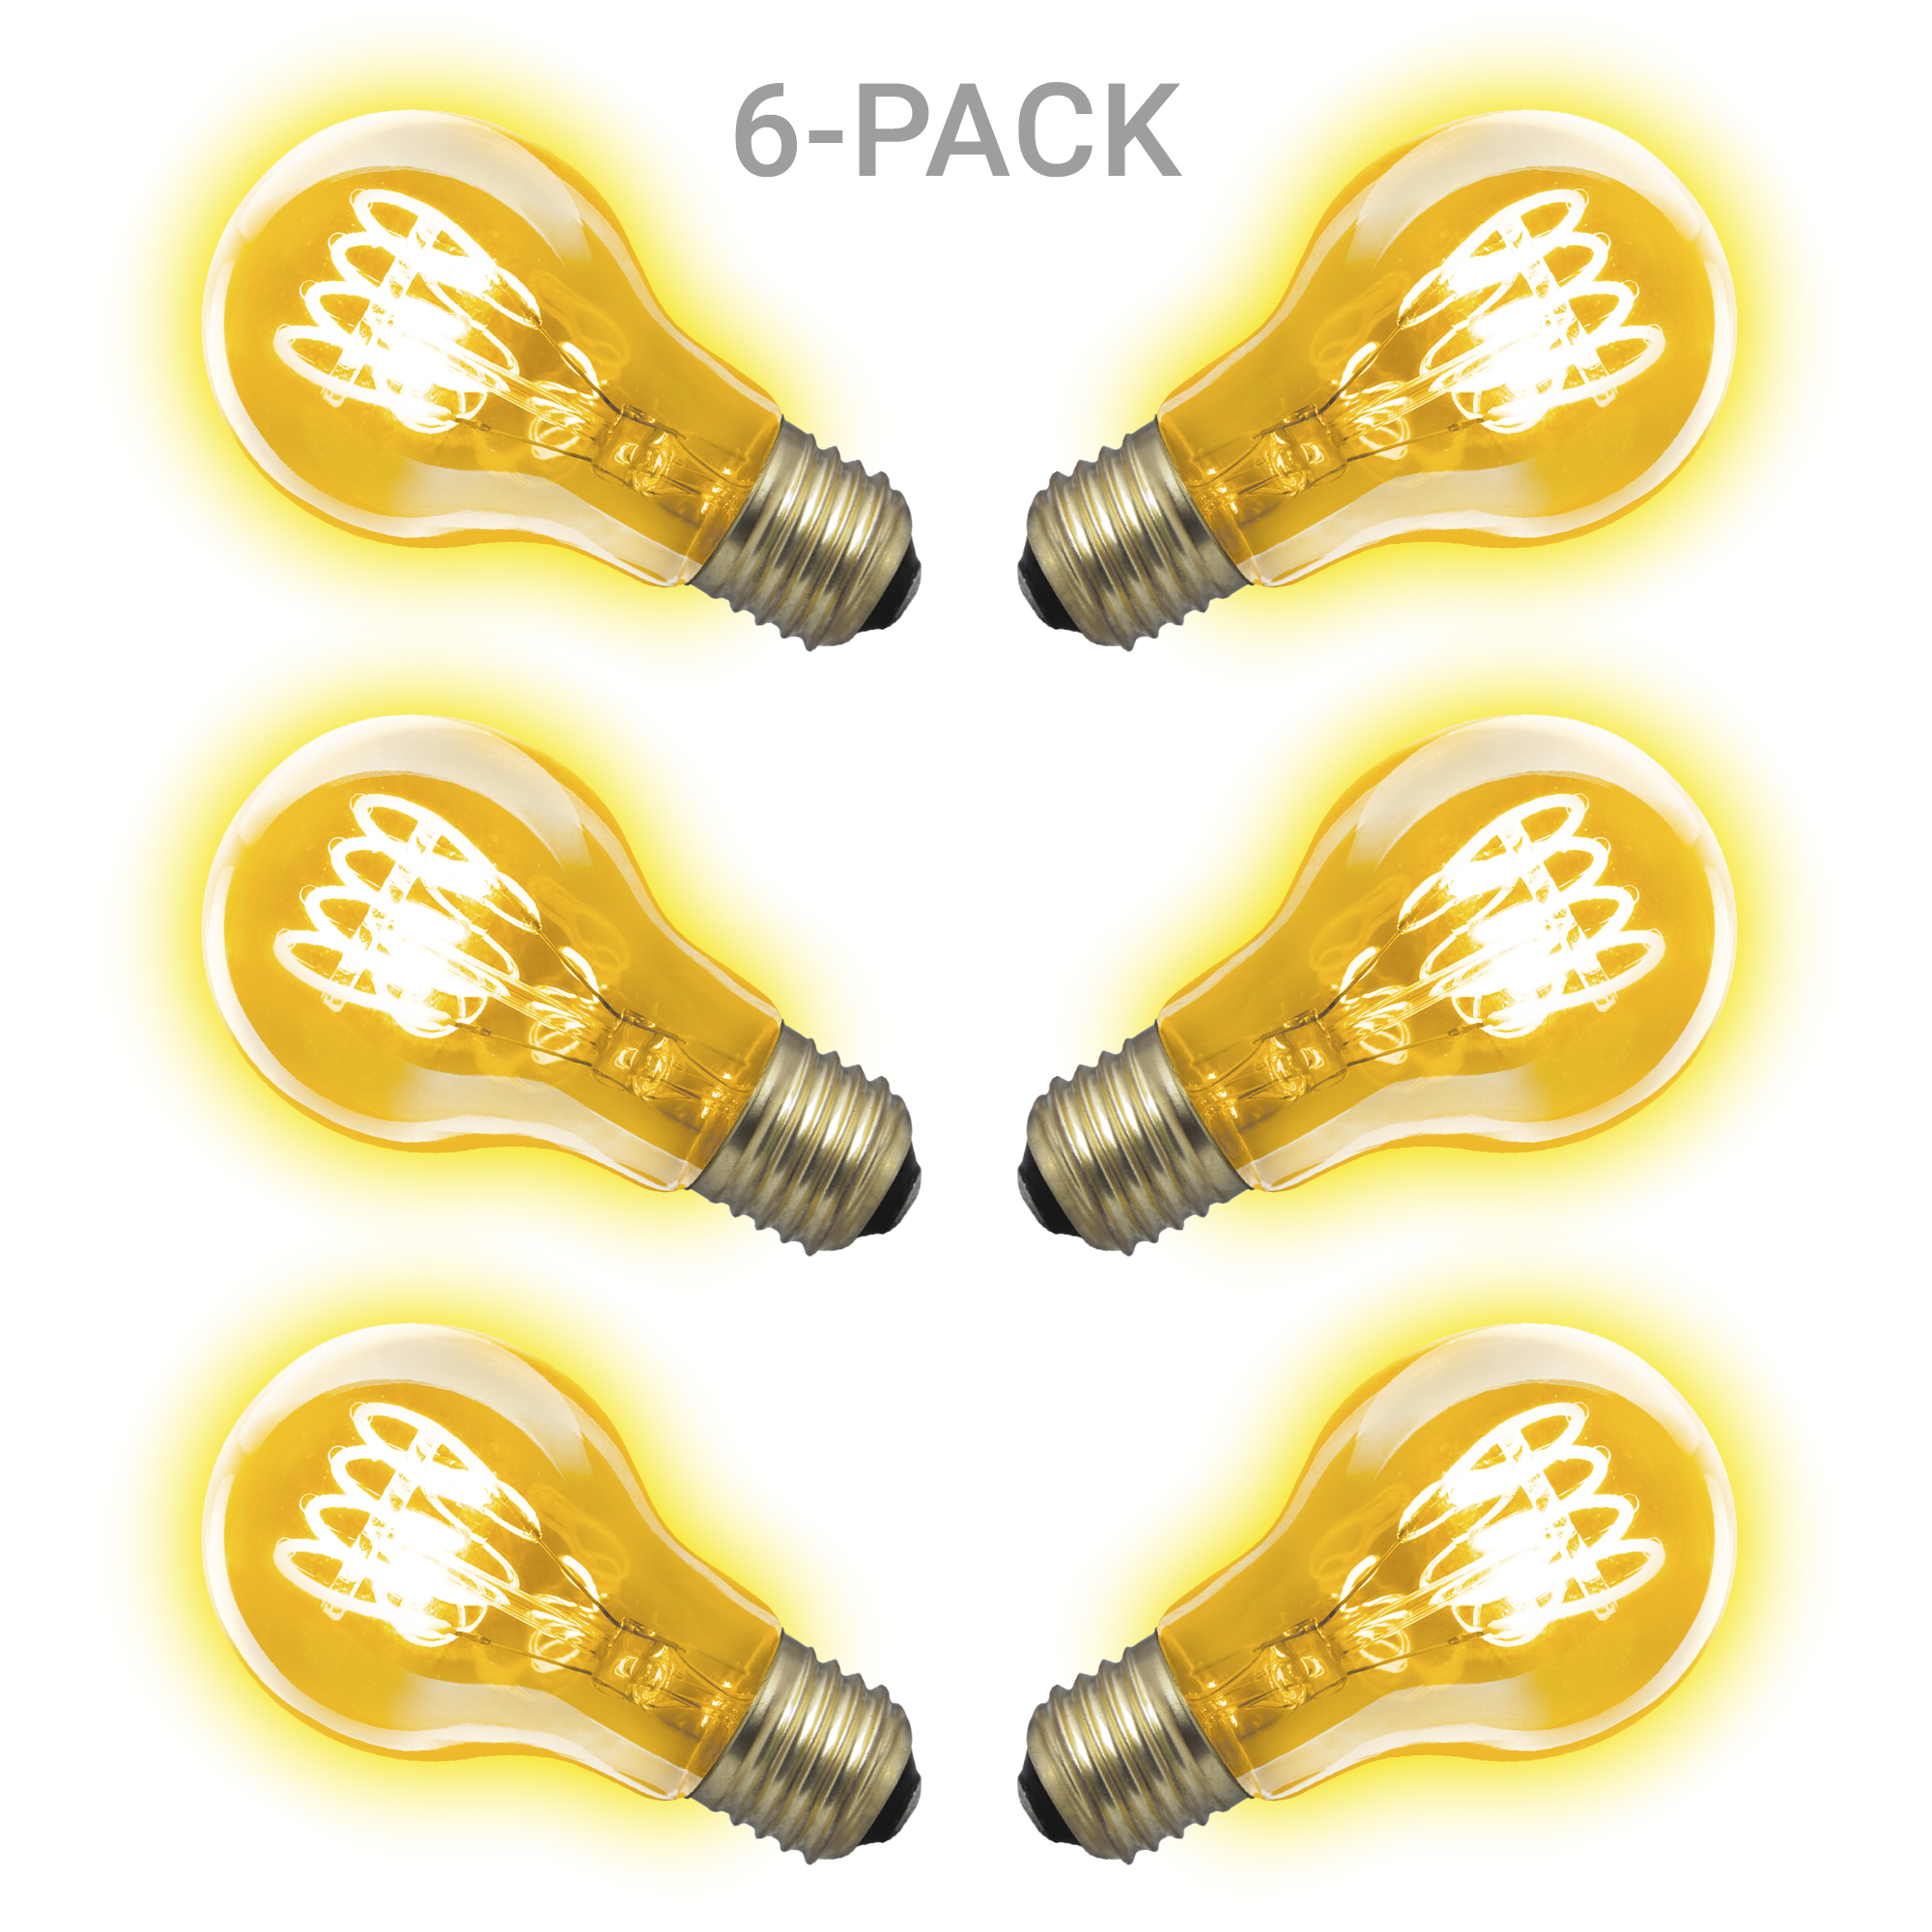 6-pack KS LED Classic Spiral